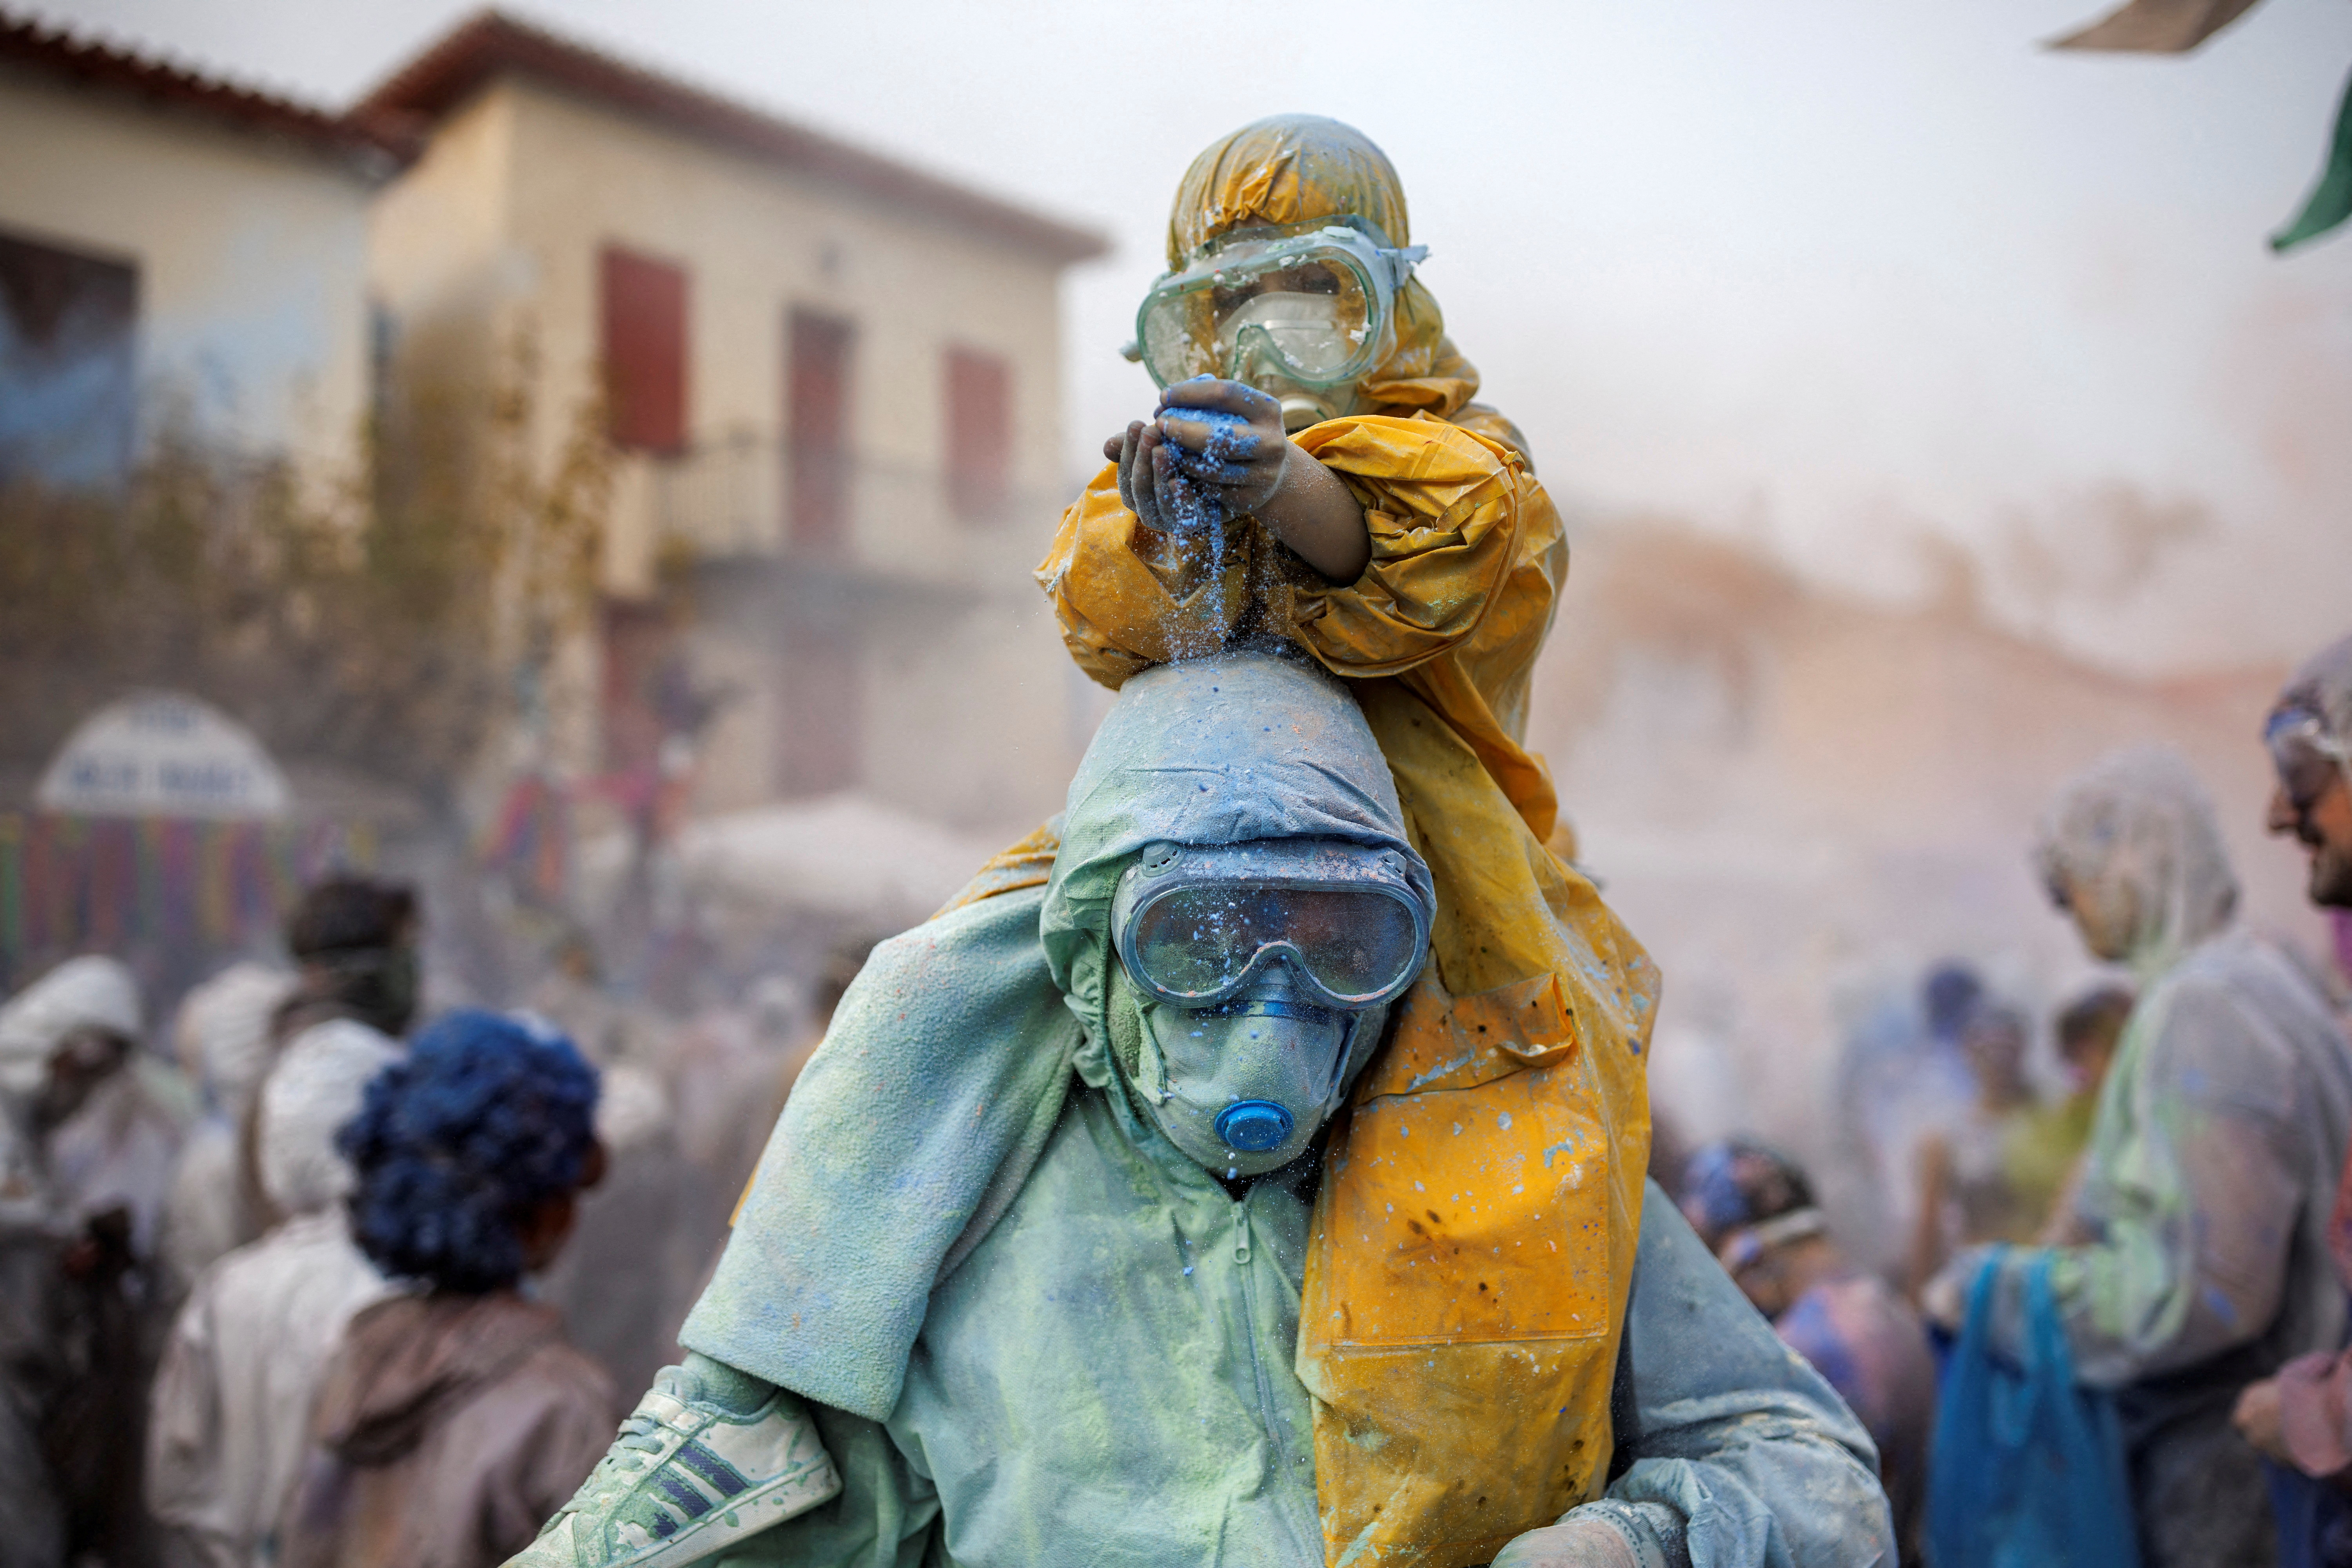 Los juerguistas celebran el "Lunes de Ceniza" participando en una colorida "guerra de la harina".